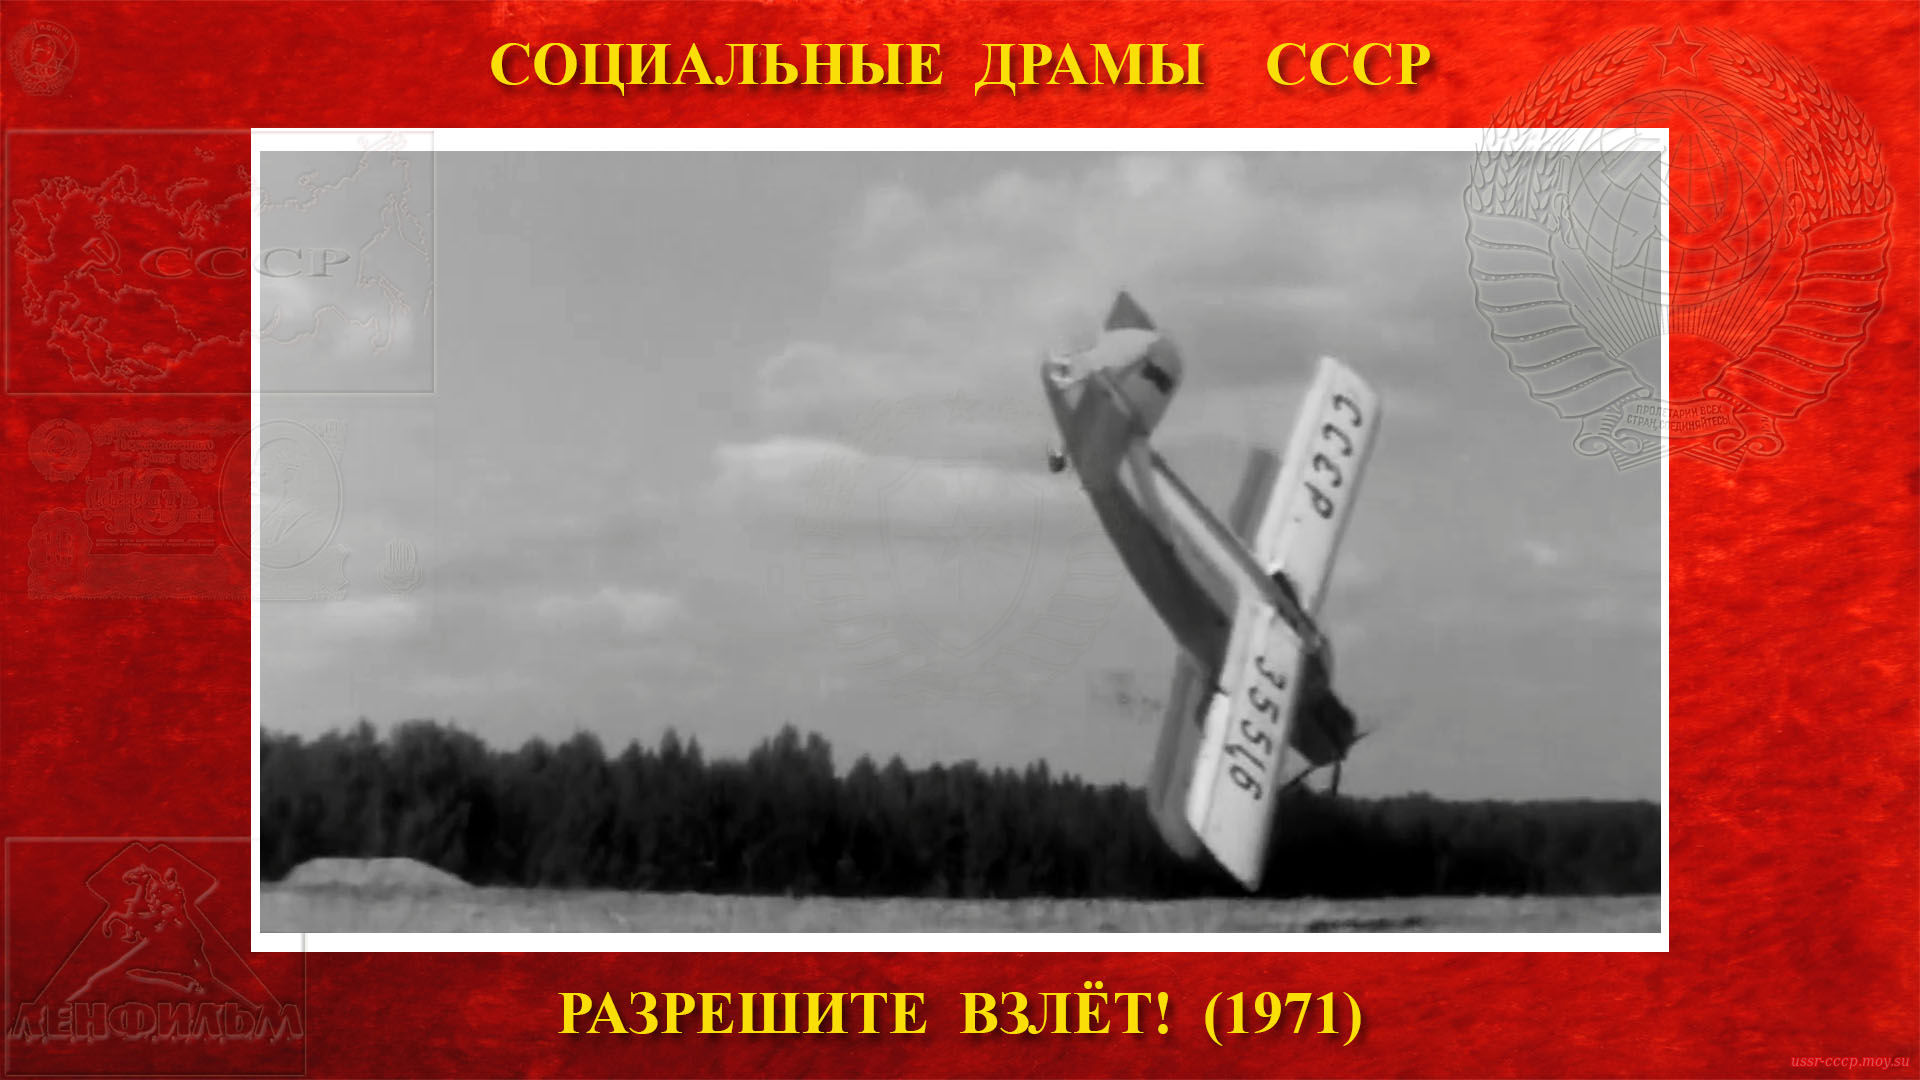 Разрешите ВЗЛЁТ! — самолёт Ан-2 разбивается и Селезнёв Василий Григорьевич погибает.